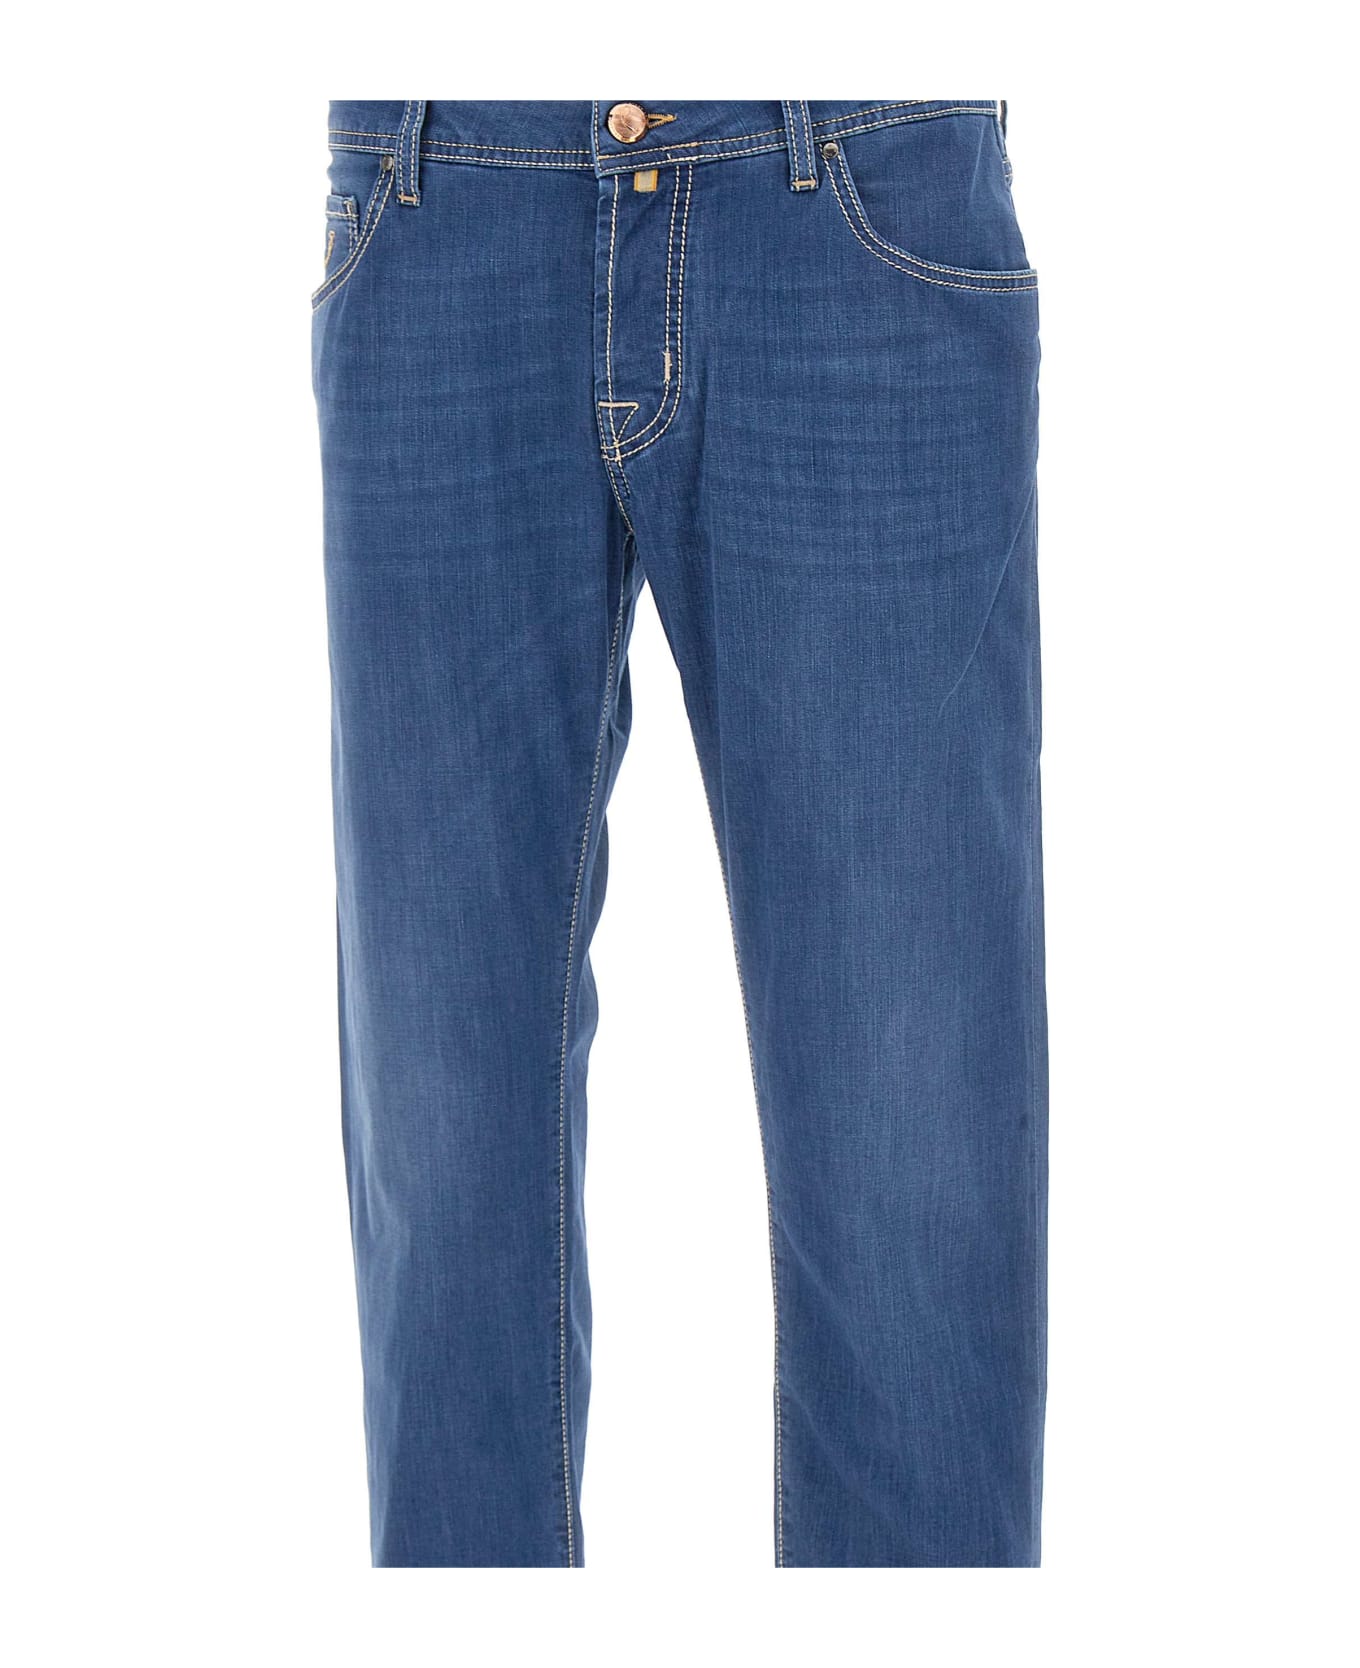 Jacob Cohen "nick" Jeans - BLUE デニム